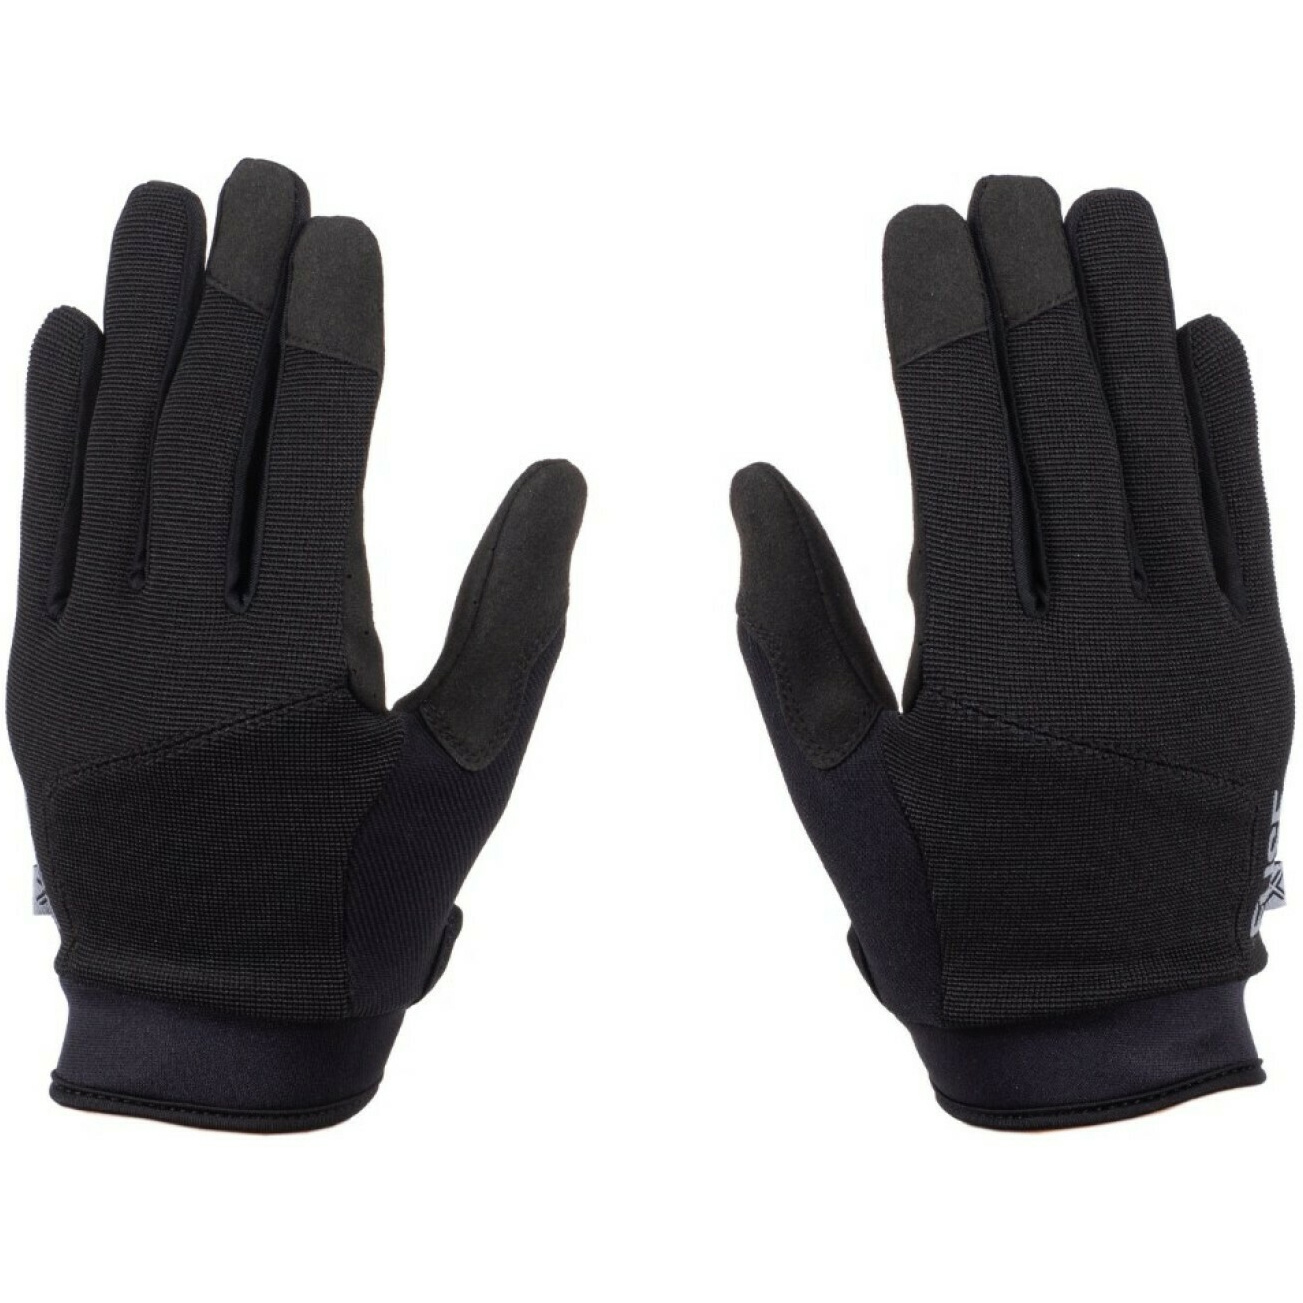 Produktbild von Fuse Alpha Handschuhe - schwarz